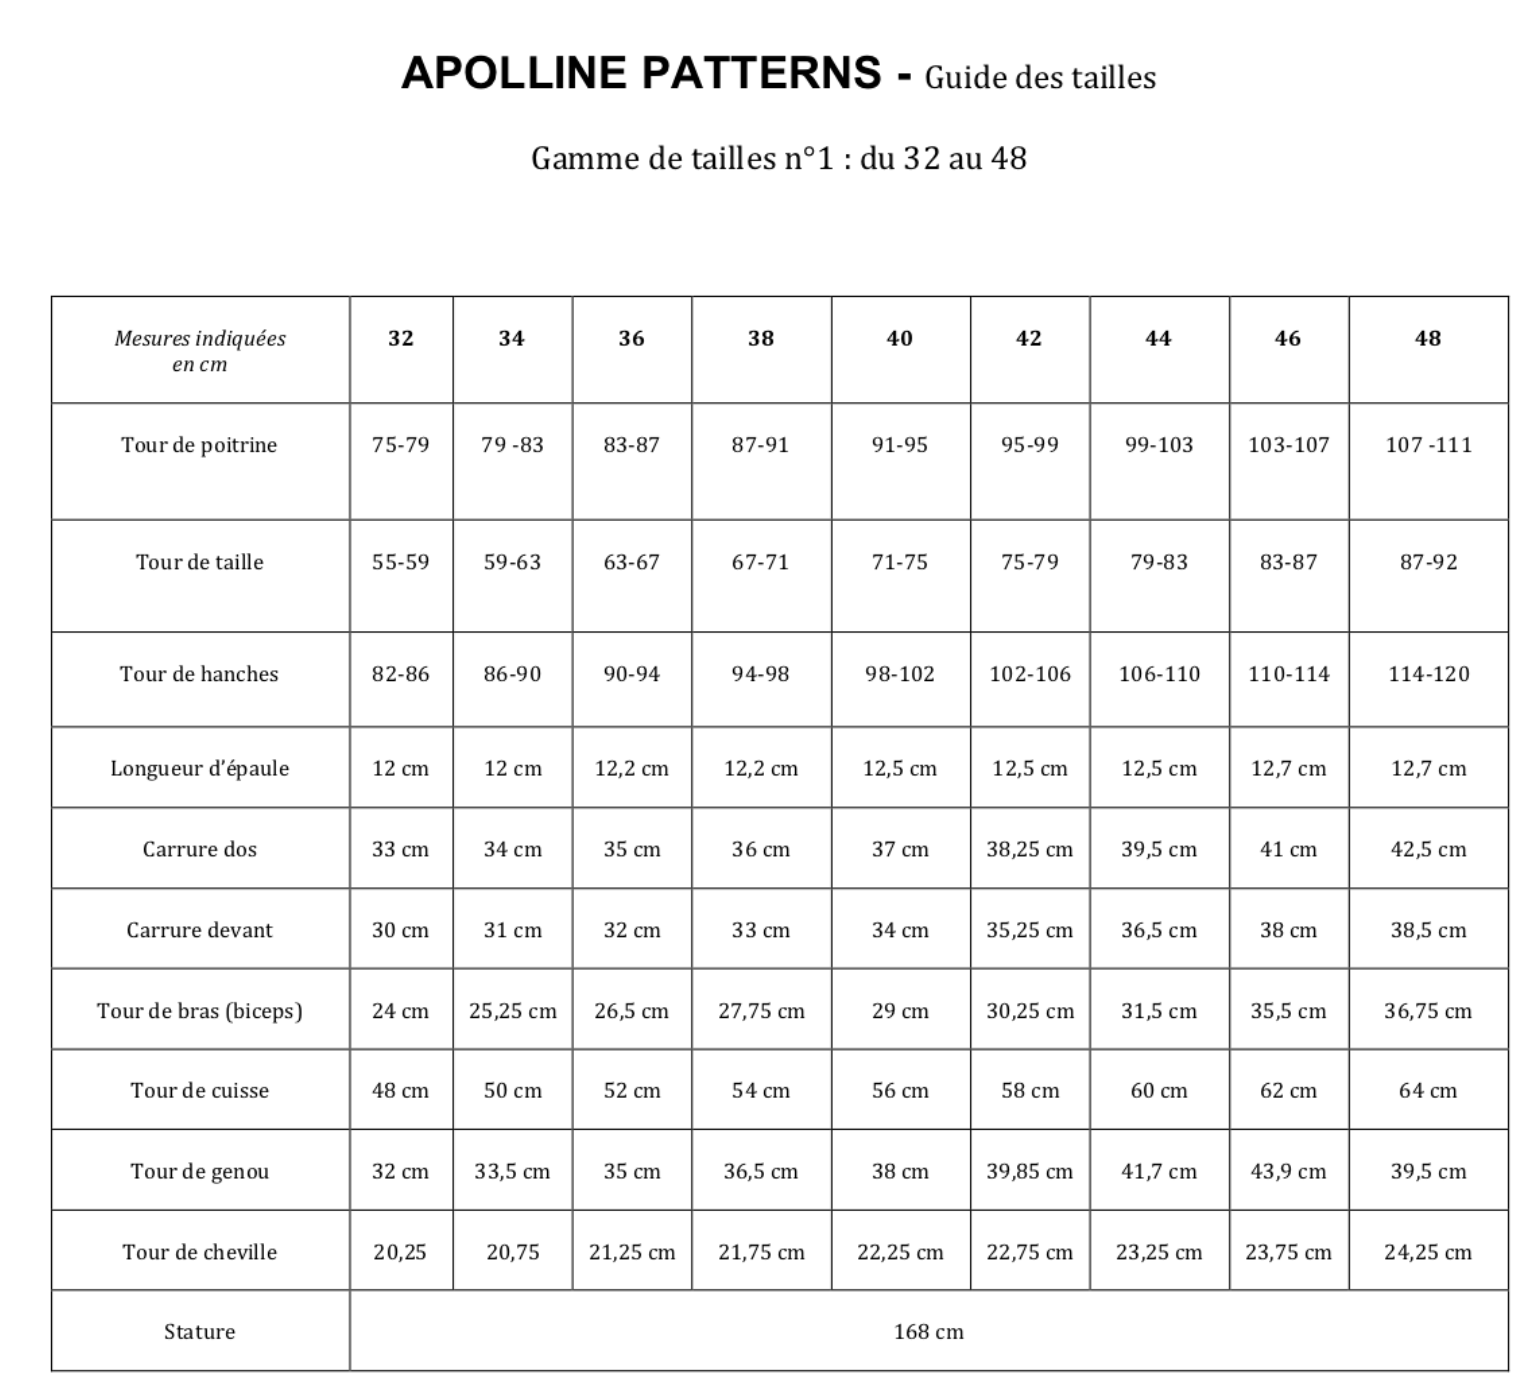 Guide des tailles - Apolline Patterns